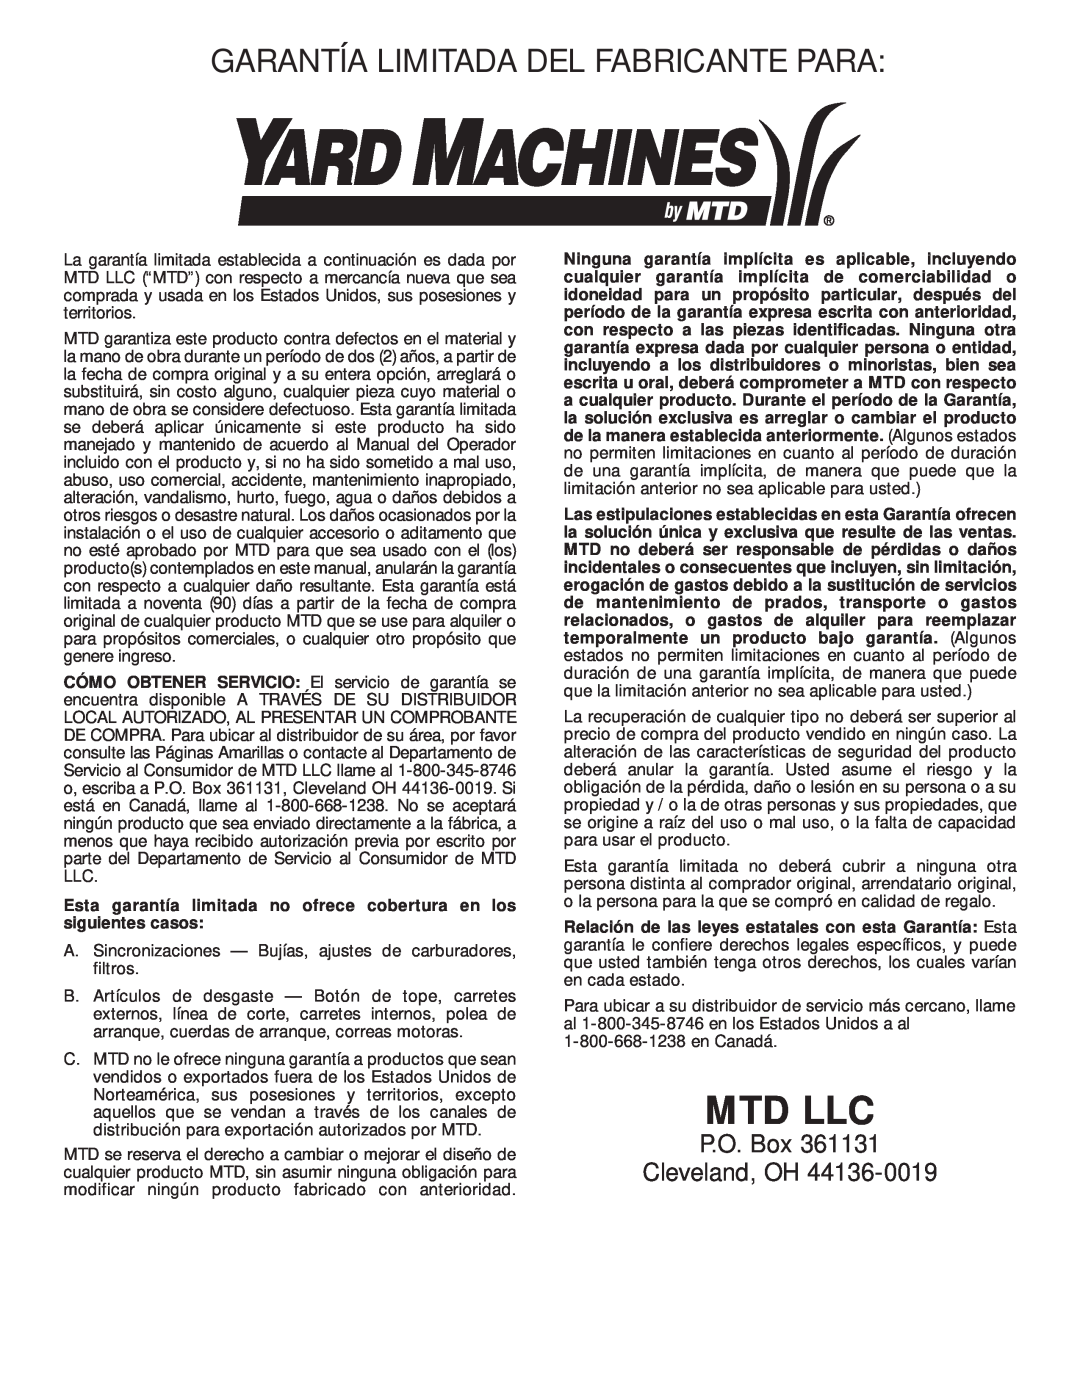 MTD Y28 Garantía Limitada Del Fabricante Para, Esta garantía limitada no ofrece cobertura en los siguientes casos, Mtd Llc 